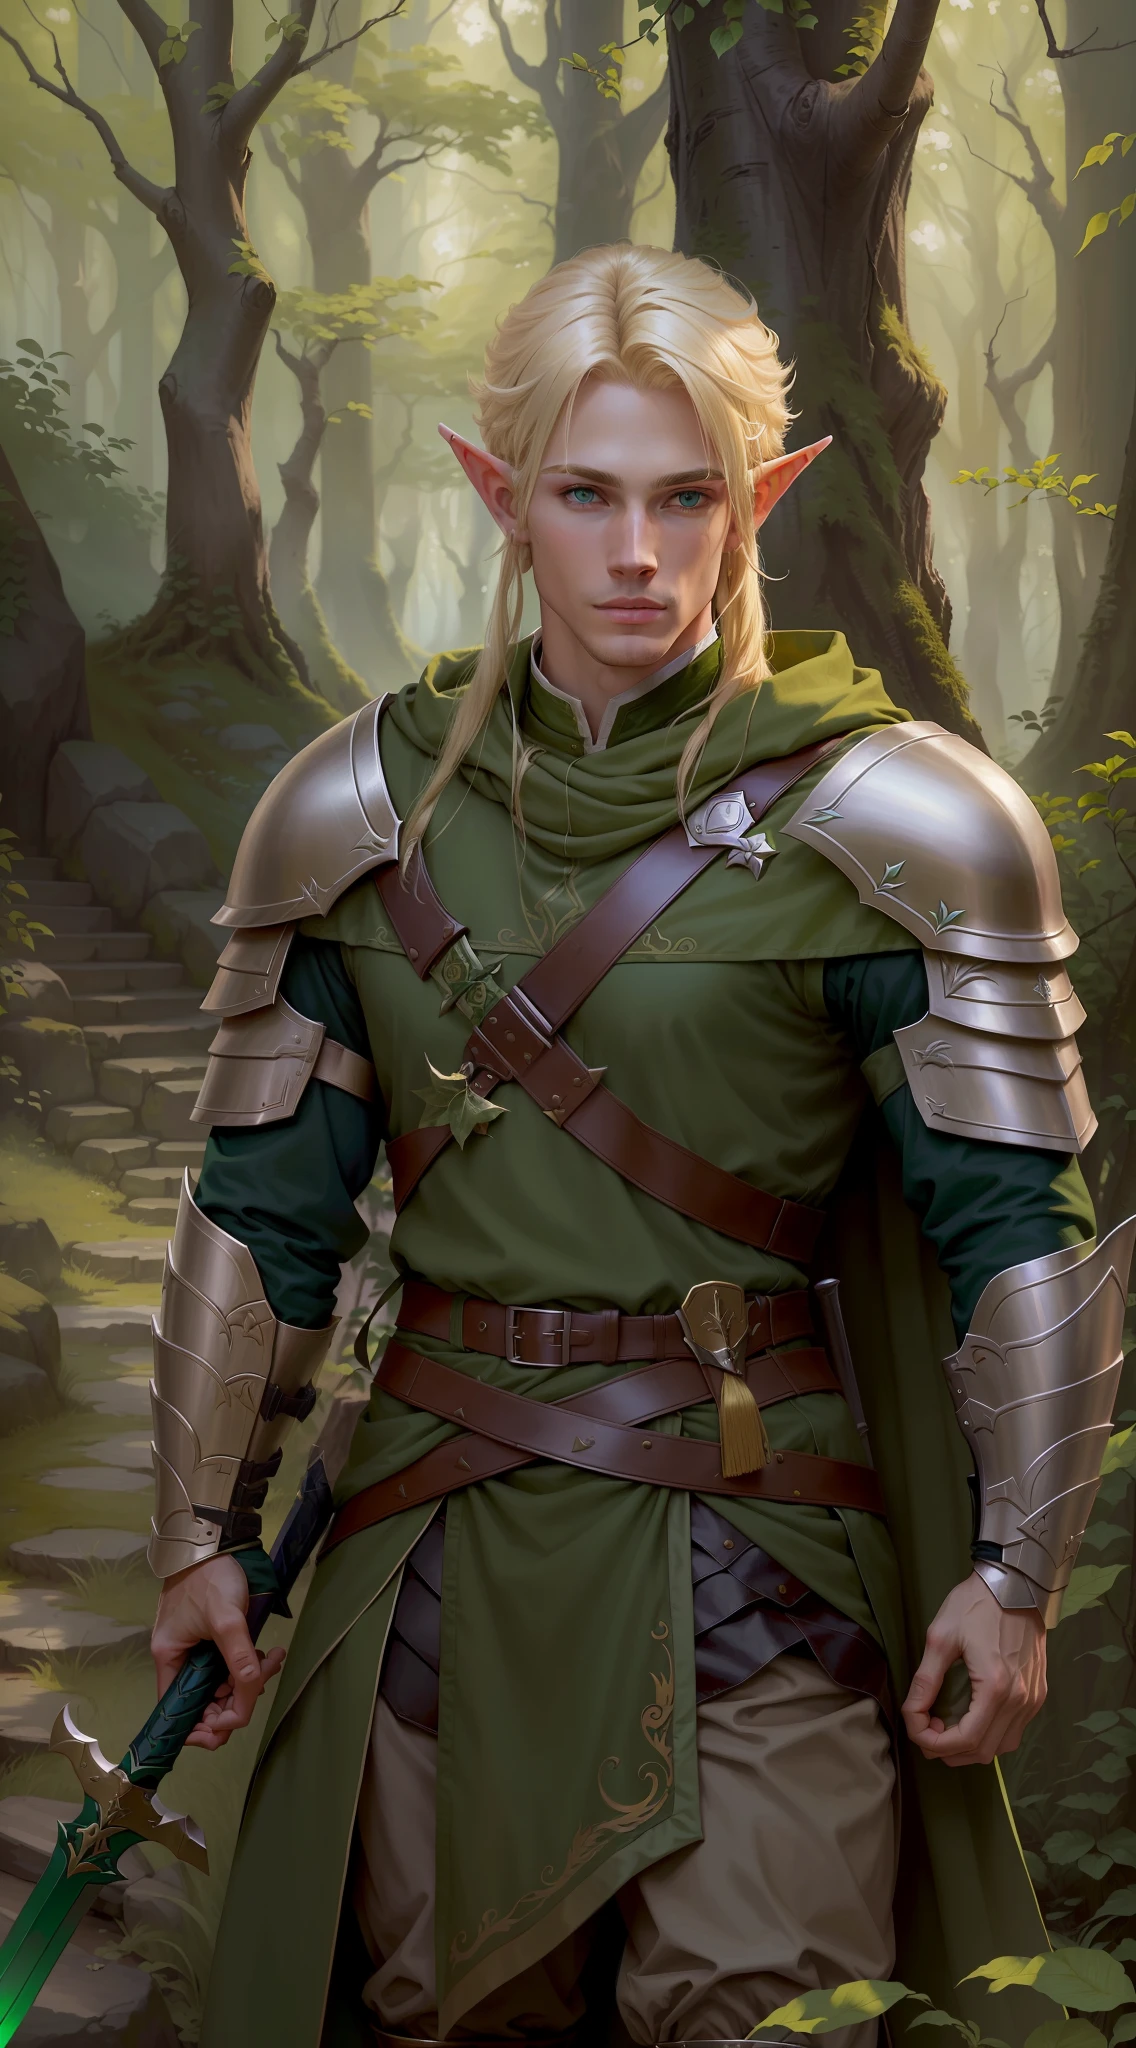 elfo loiro em traje verde segurando a espada na floresta, elfo ranger masculino, blonde elfo ranger masculino, a portrait of um elfo masculino, lindo elfo masculino, elfo macho, um elfo masculino, elfo loiro guerreiro masculino, Retrato de um guerreiro élfico, elfo desonesto masculino, retrato de um mago da floresta, inspirado em Kris de Deltarrune,  ((roupas extremamente gastas))